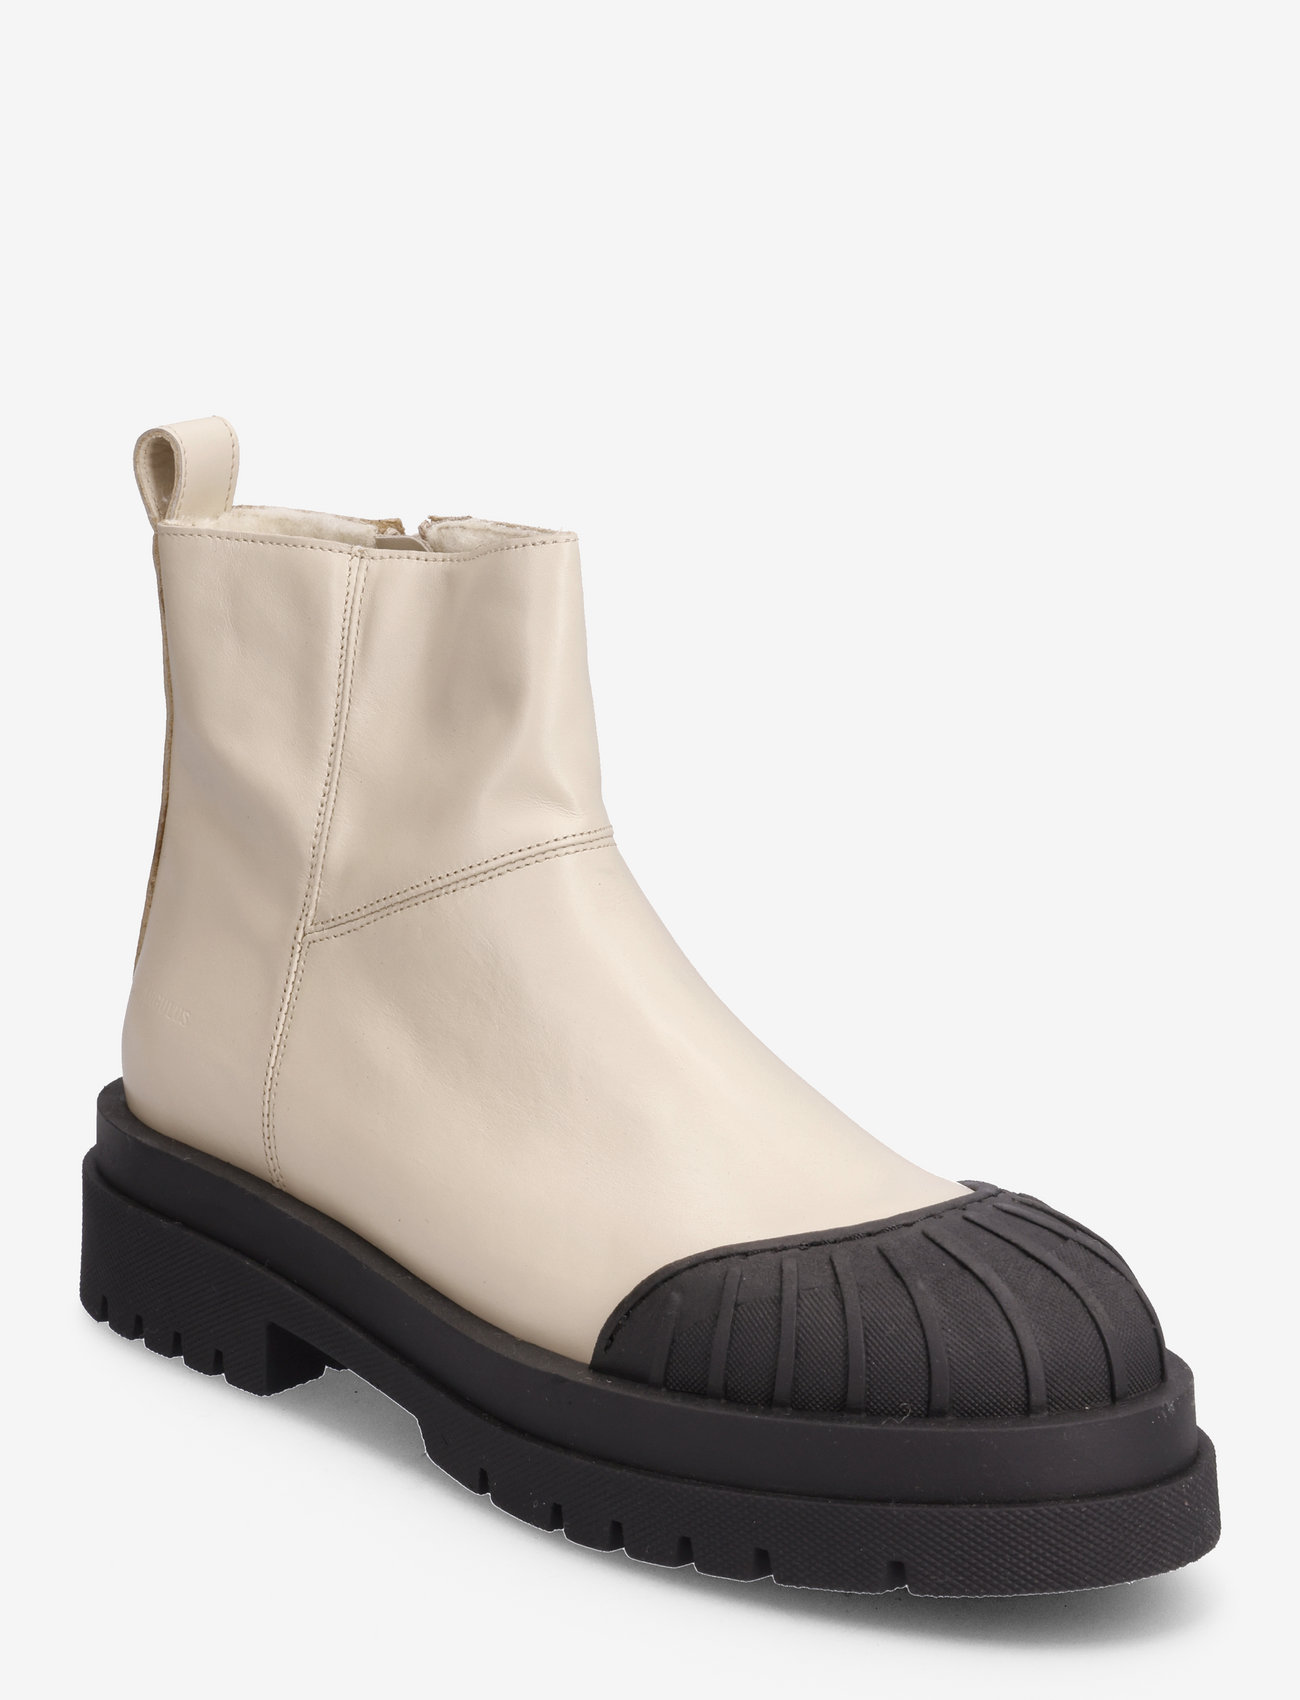 ANGULUS - Boots - flat - women - 1502 buttermilk - 0